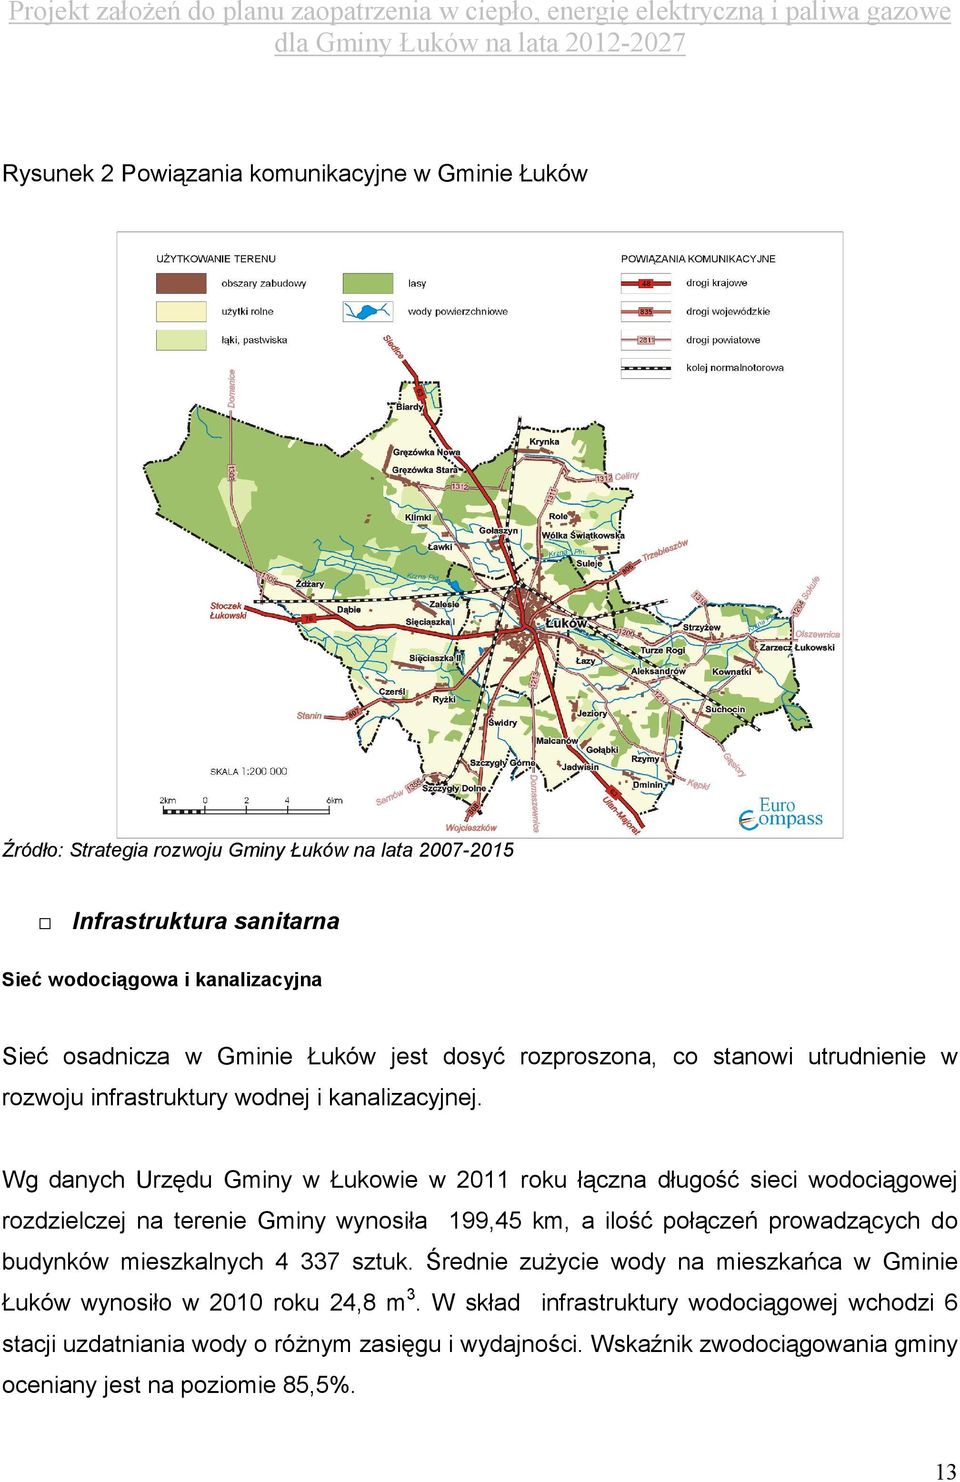 Wg danych Urzędu Gminy w Łukowie w 2011 roku łączna długość sieci wodociągowej rozdzielczej na terenie Gminy wynosiła 199,45 km, a ilość połączeń prowadzących do budynków mieszkalnych